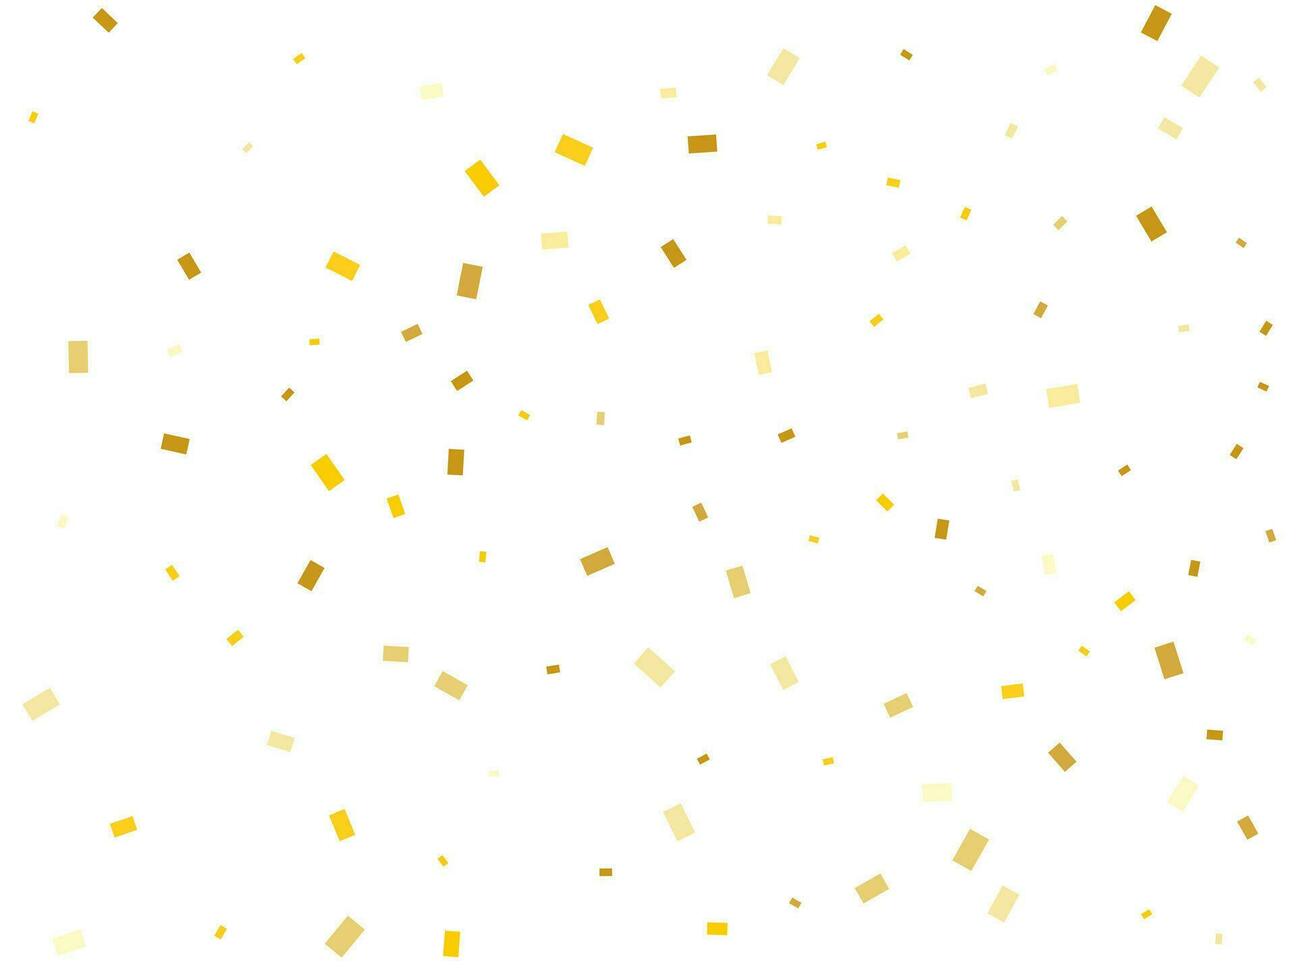 ligero dorado rectángulos papel picado celebracion, que cae dorado resumen decoración para fiesta. vector ilustración